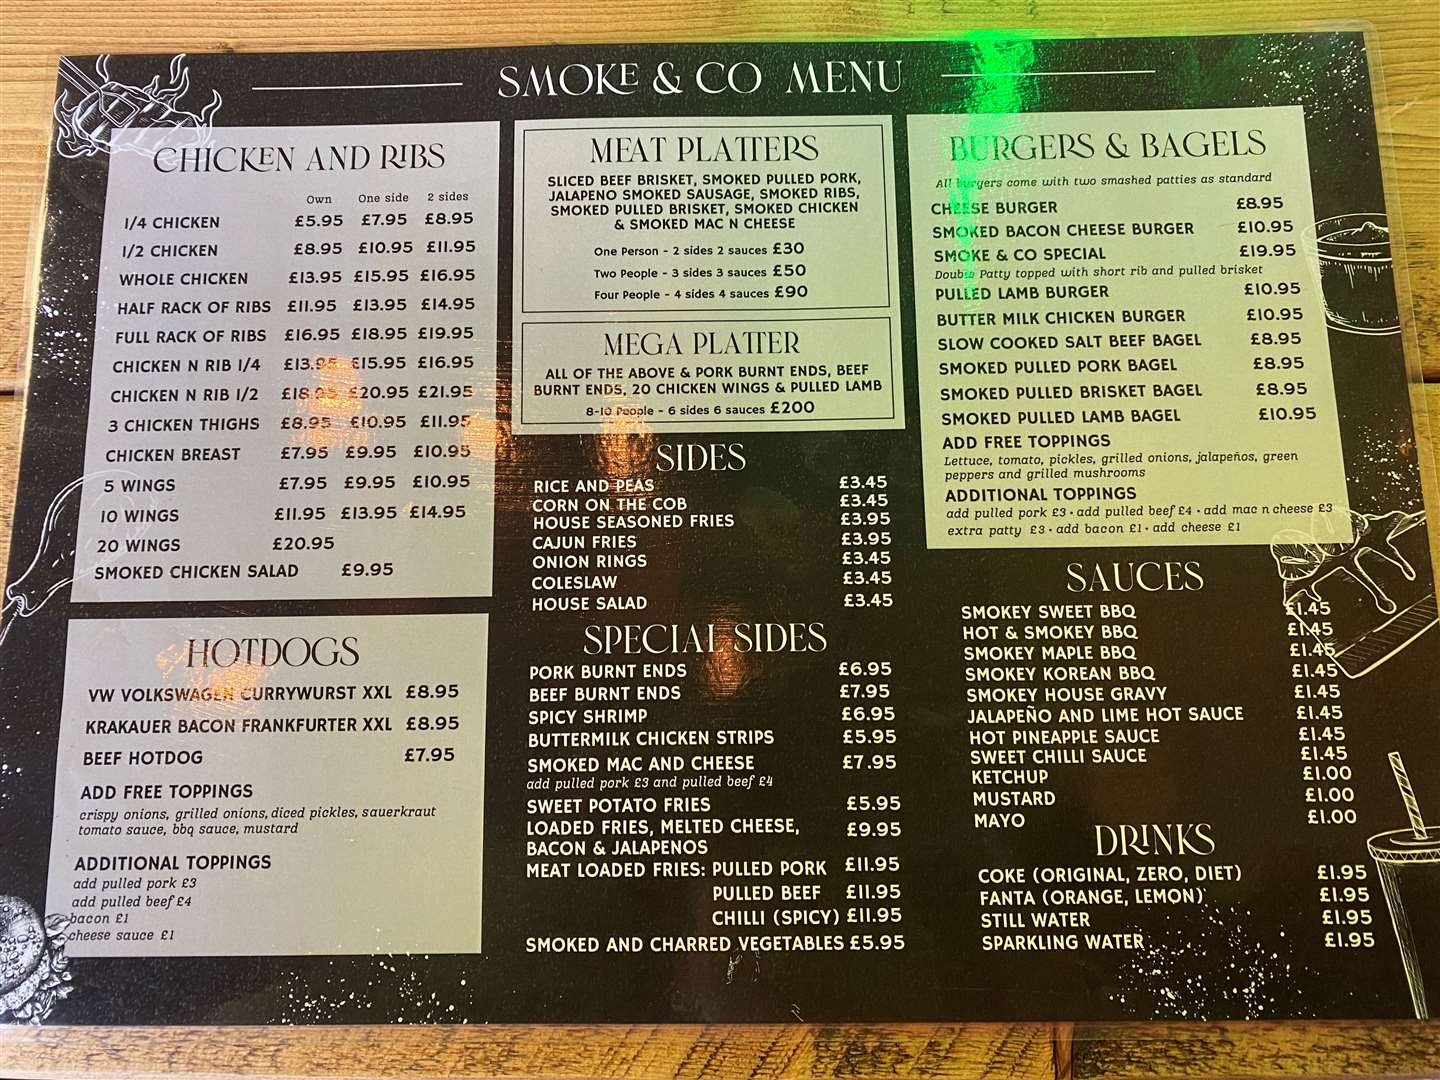 The Smoke & Co menu